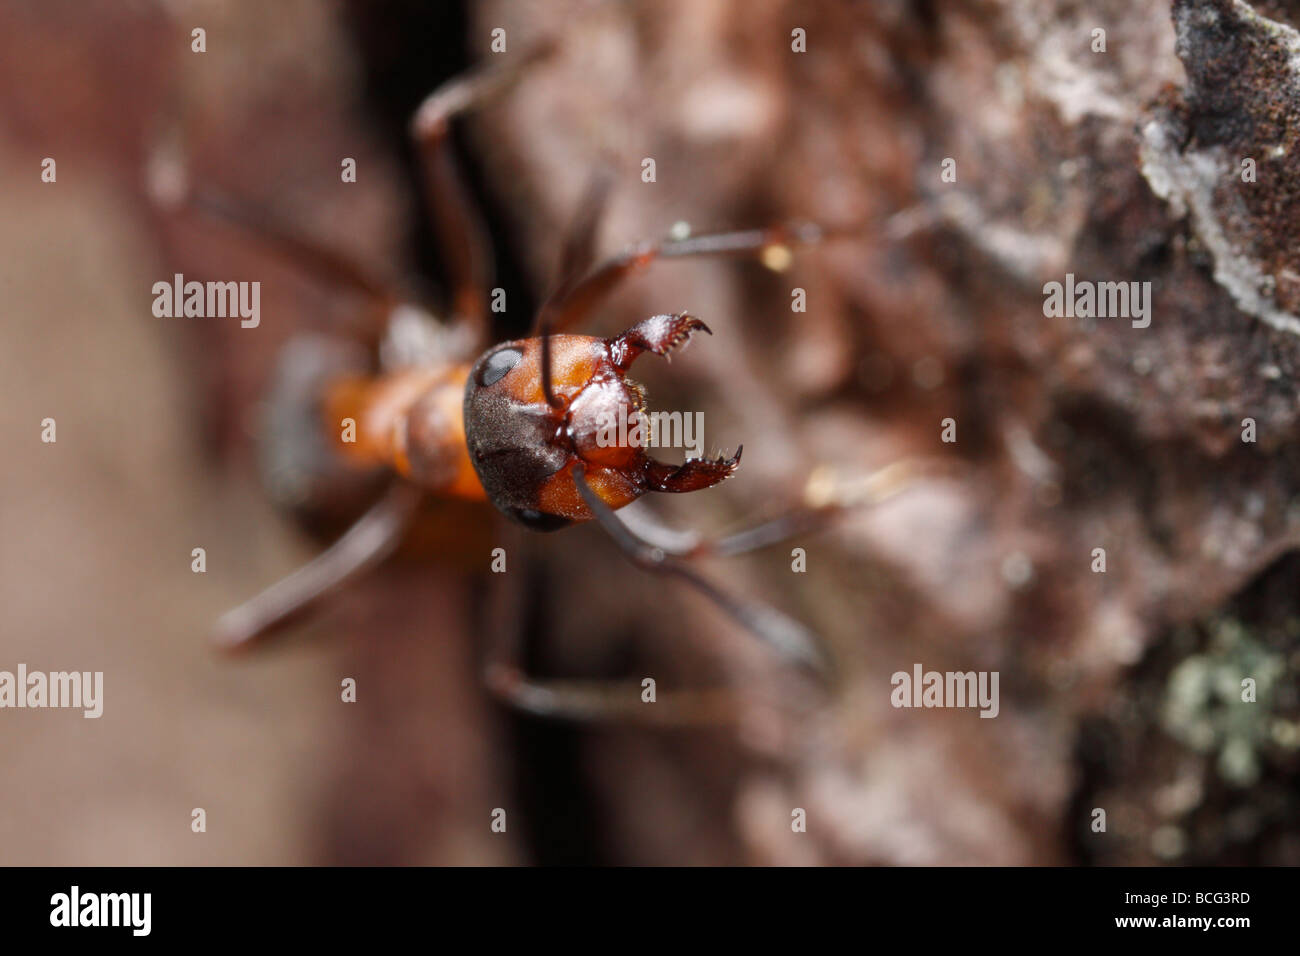 Horse ant (formica rufa) minaccia lo spettatore con ganasce aperte. Foto Stock